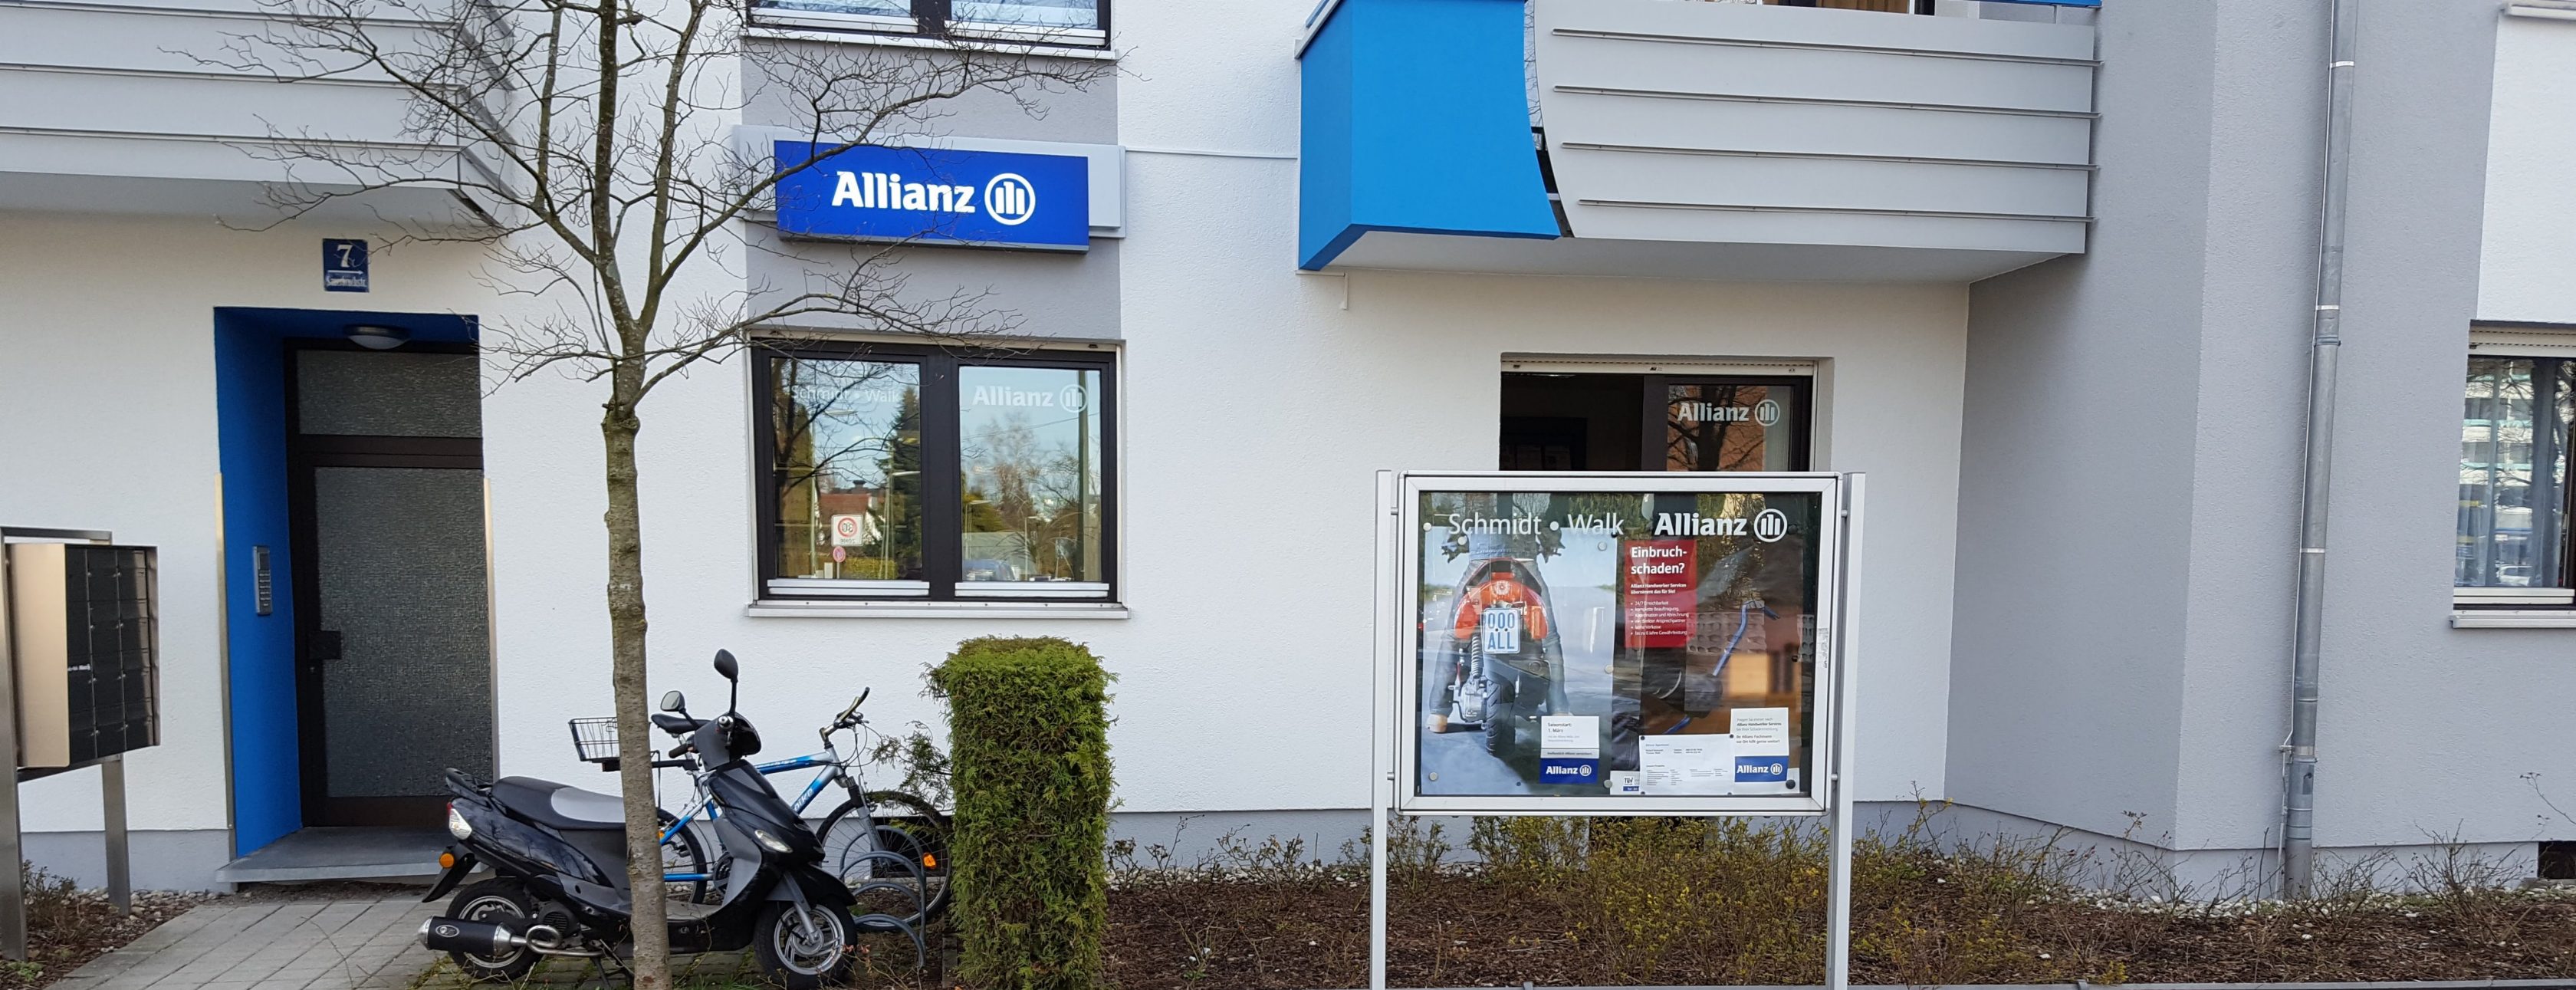 Allianz Versicherung Roland Schmidt München - Agentur